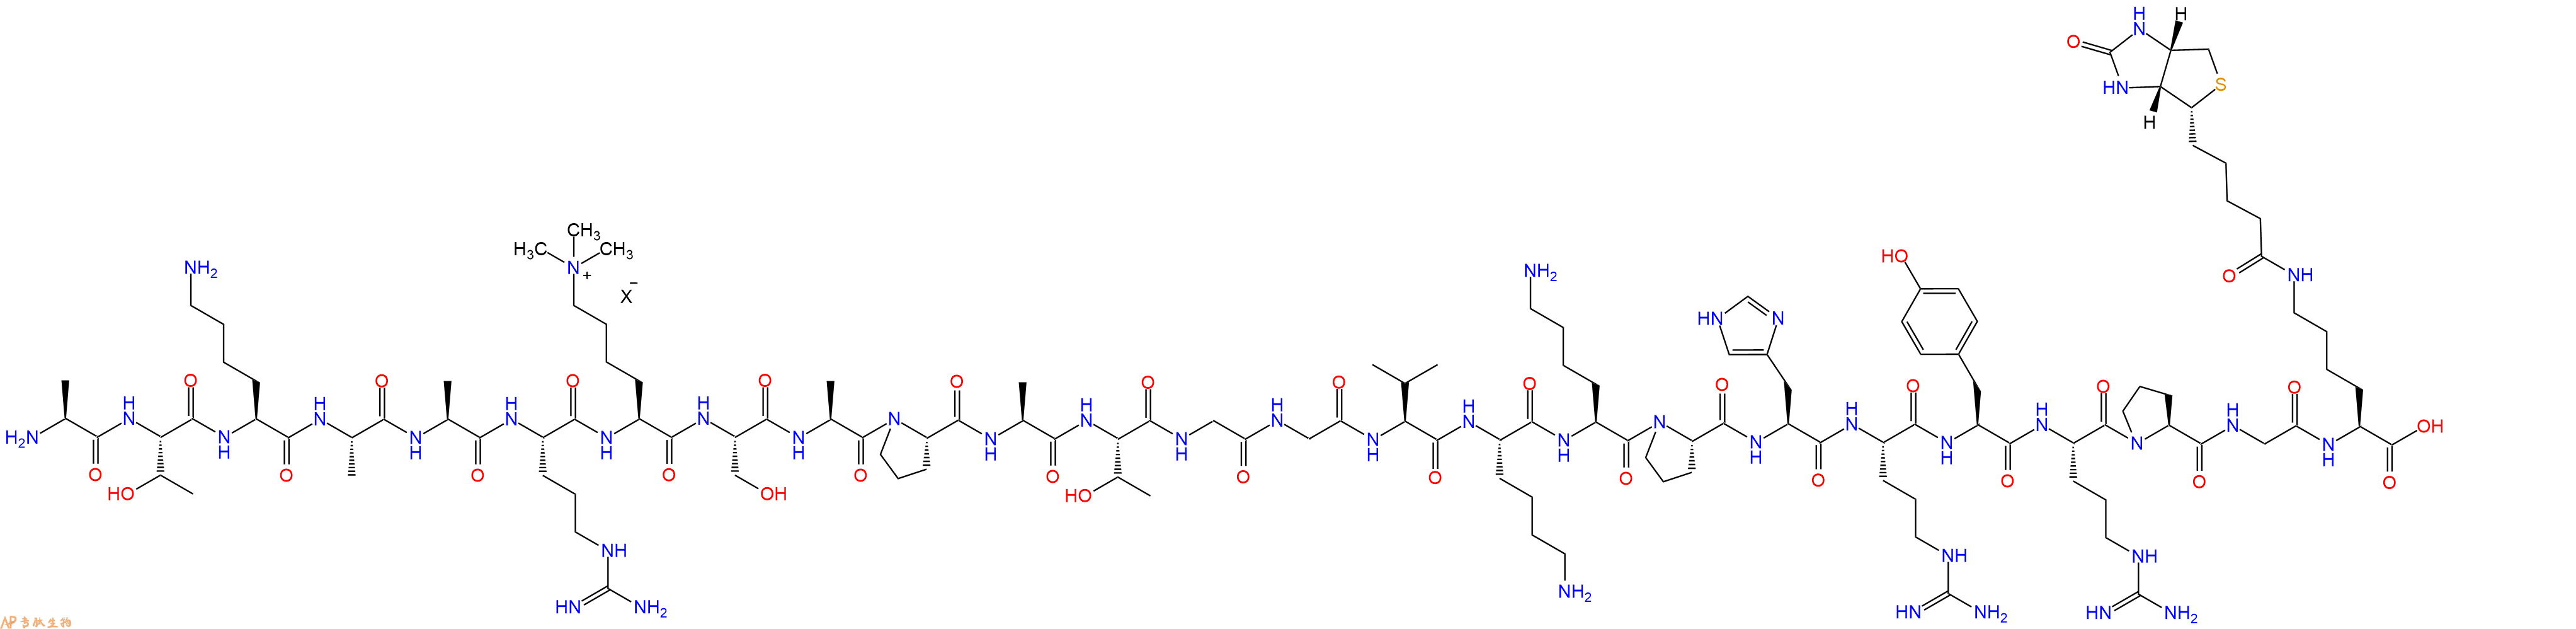 专肽生物产品组蛋白肽段[Lys(Me3)27]-Histone H3(21-44), biotin-la